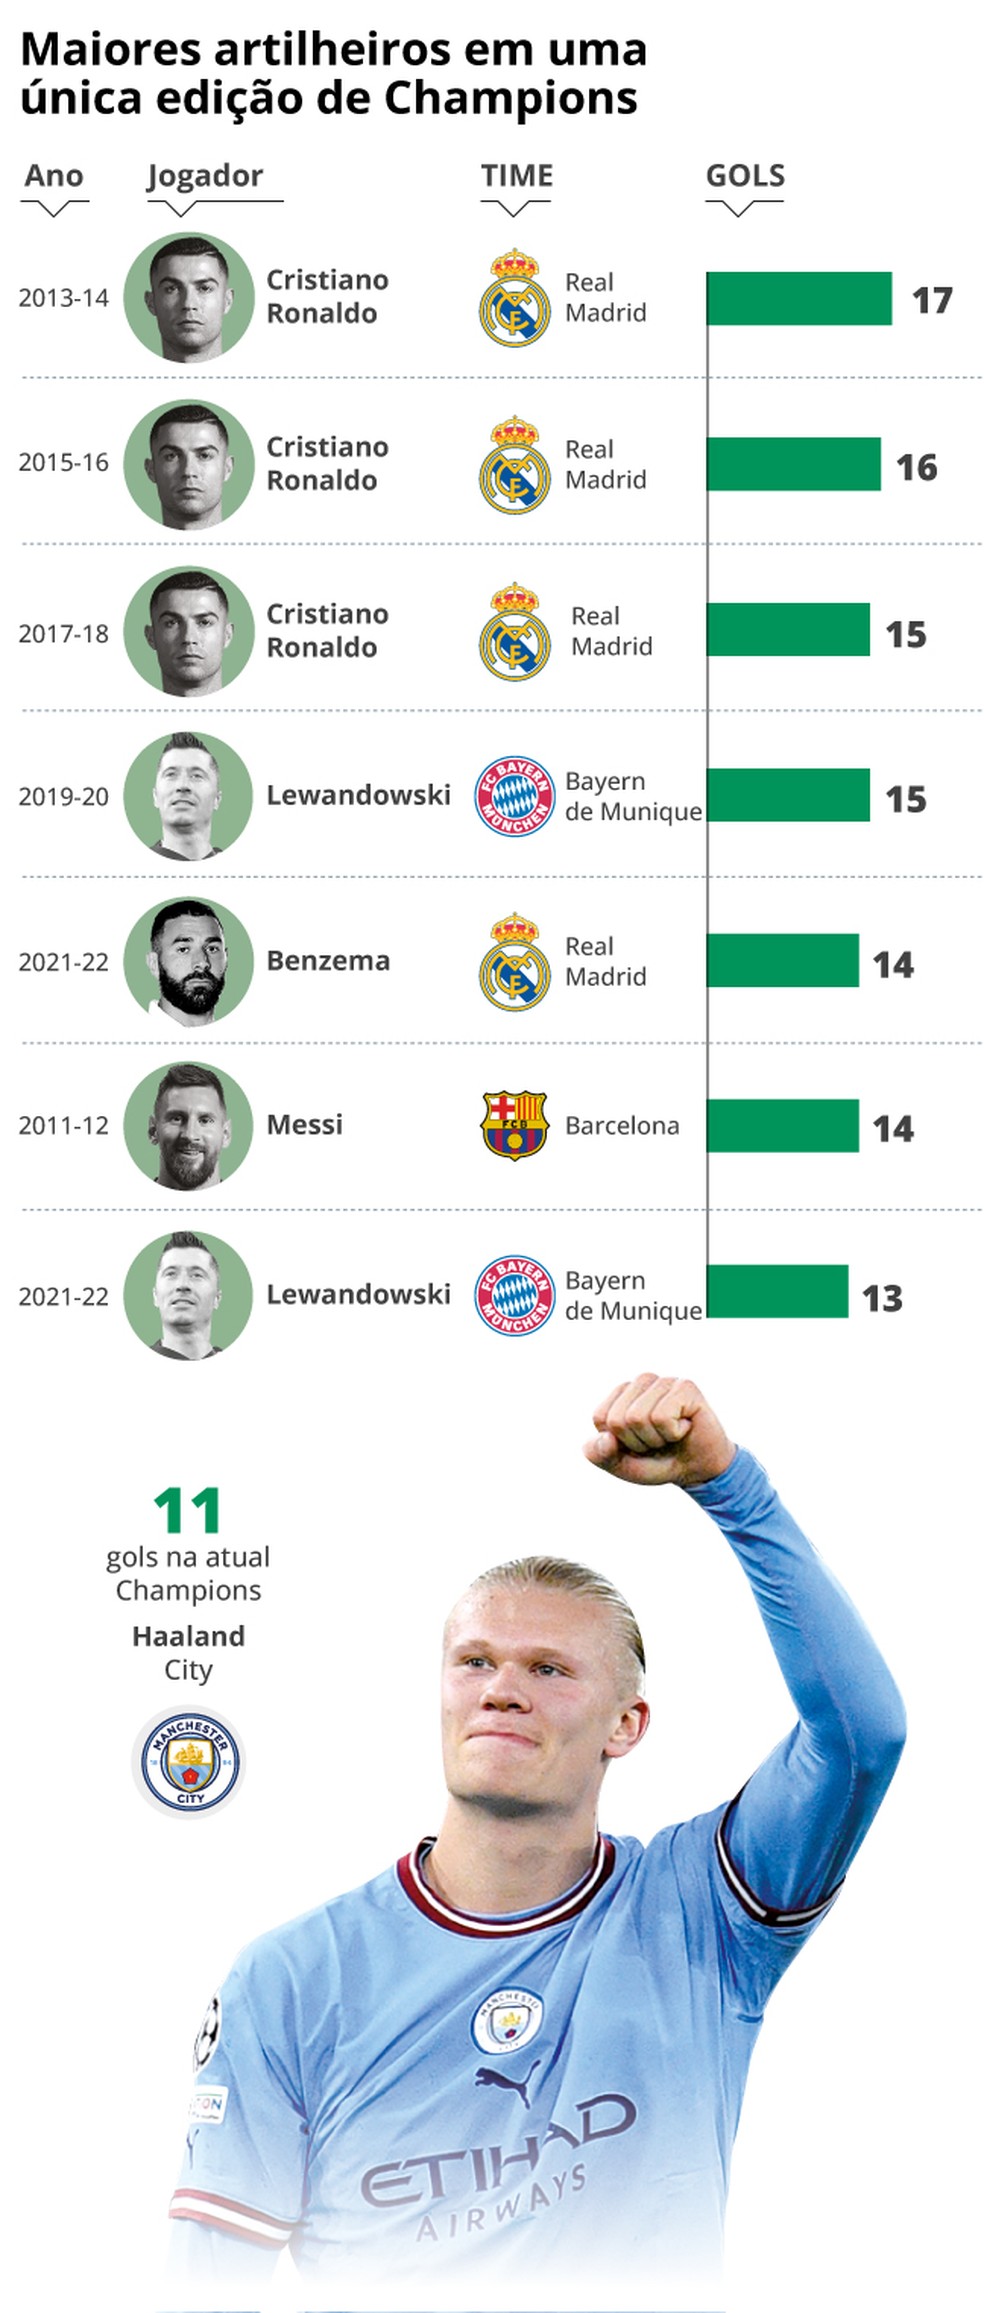 Quem são os maiores artilheiros da história da Champions League